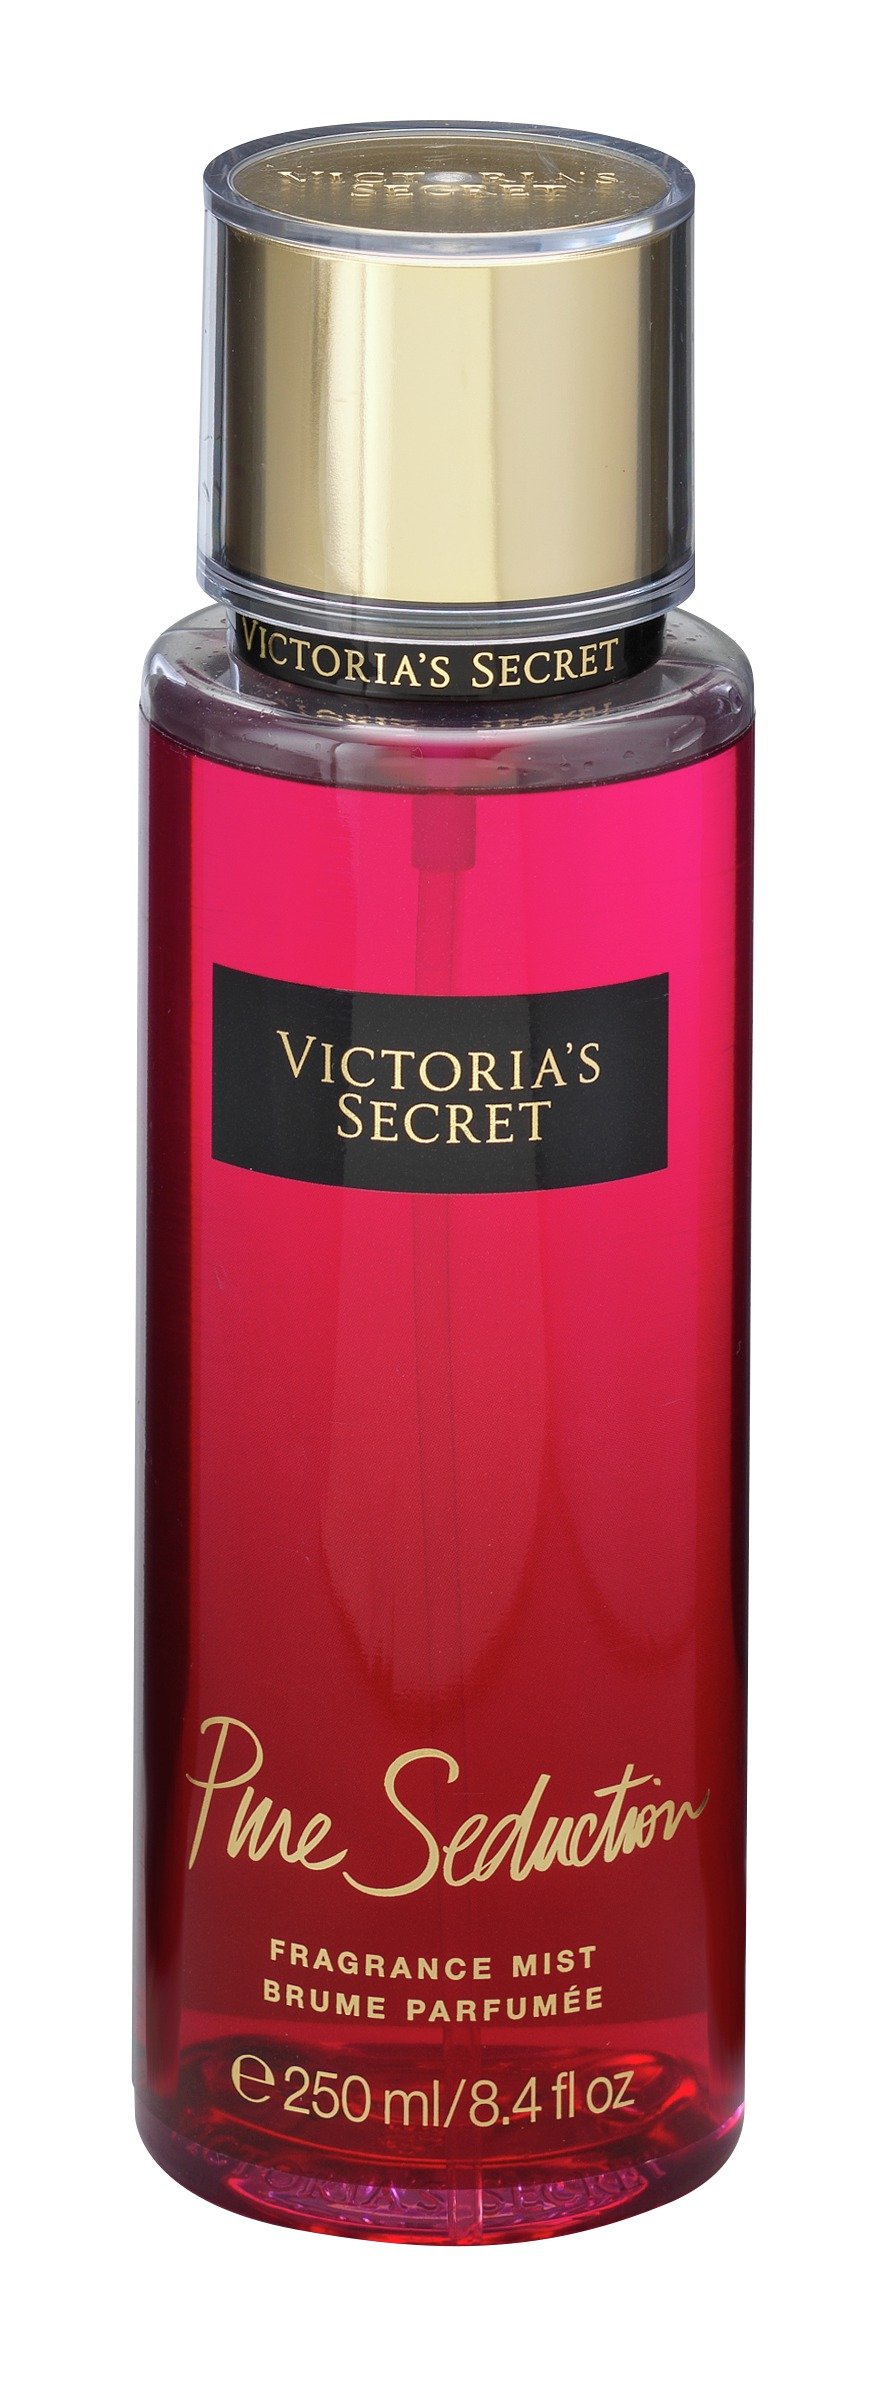 Victoria's Secret Pure Seduction Body Mist review